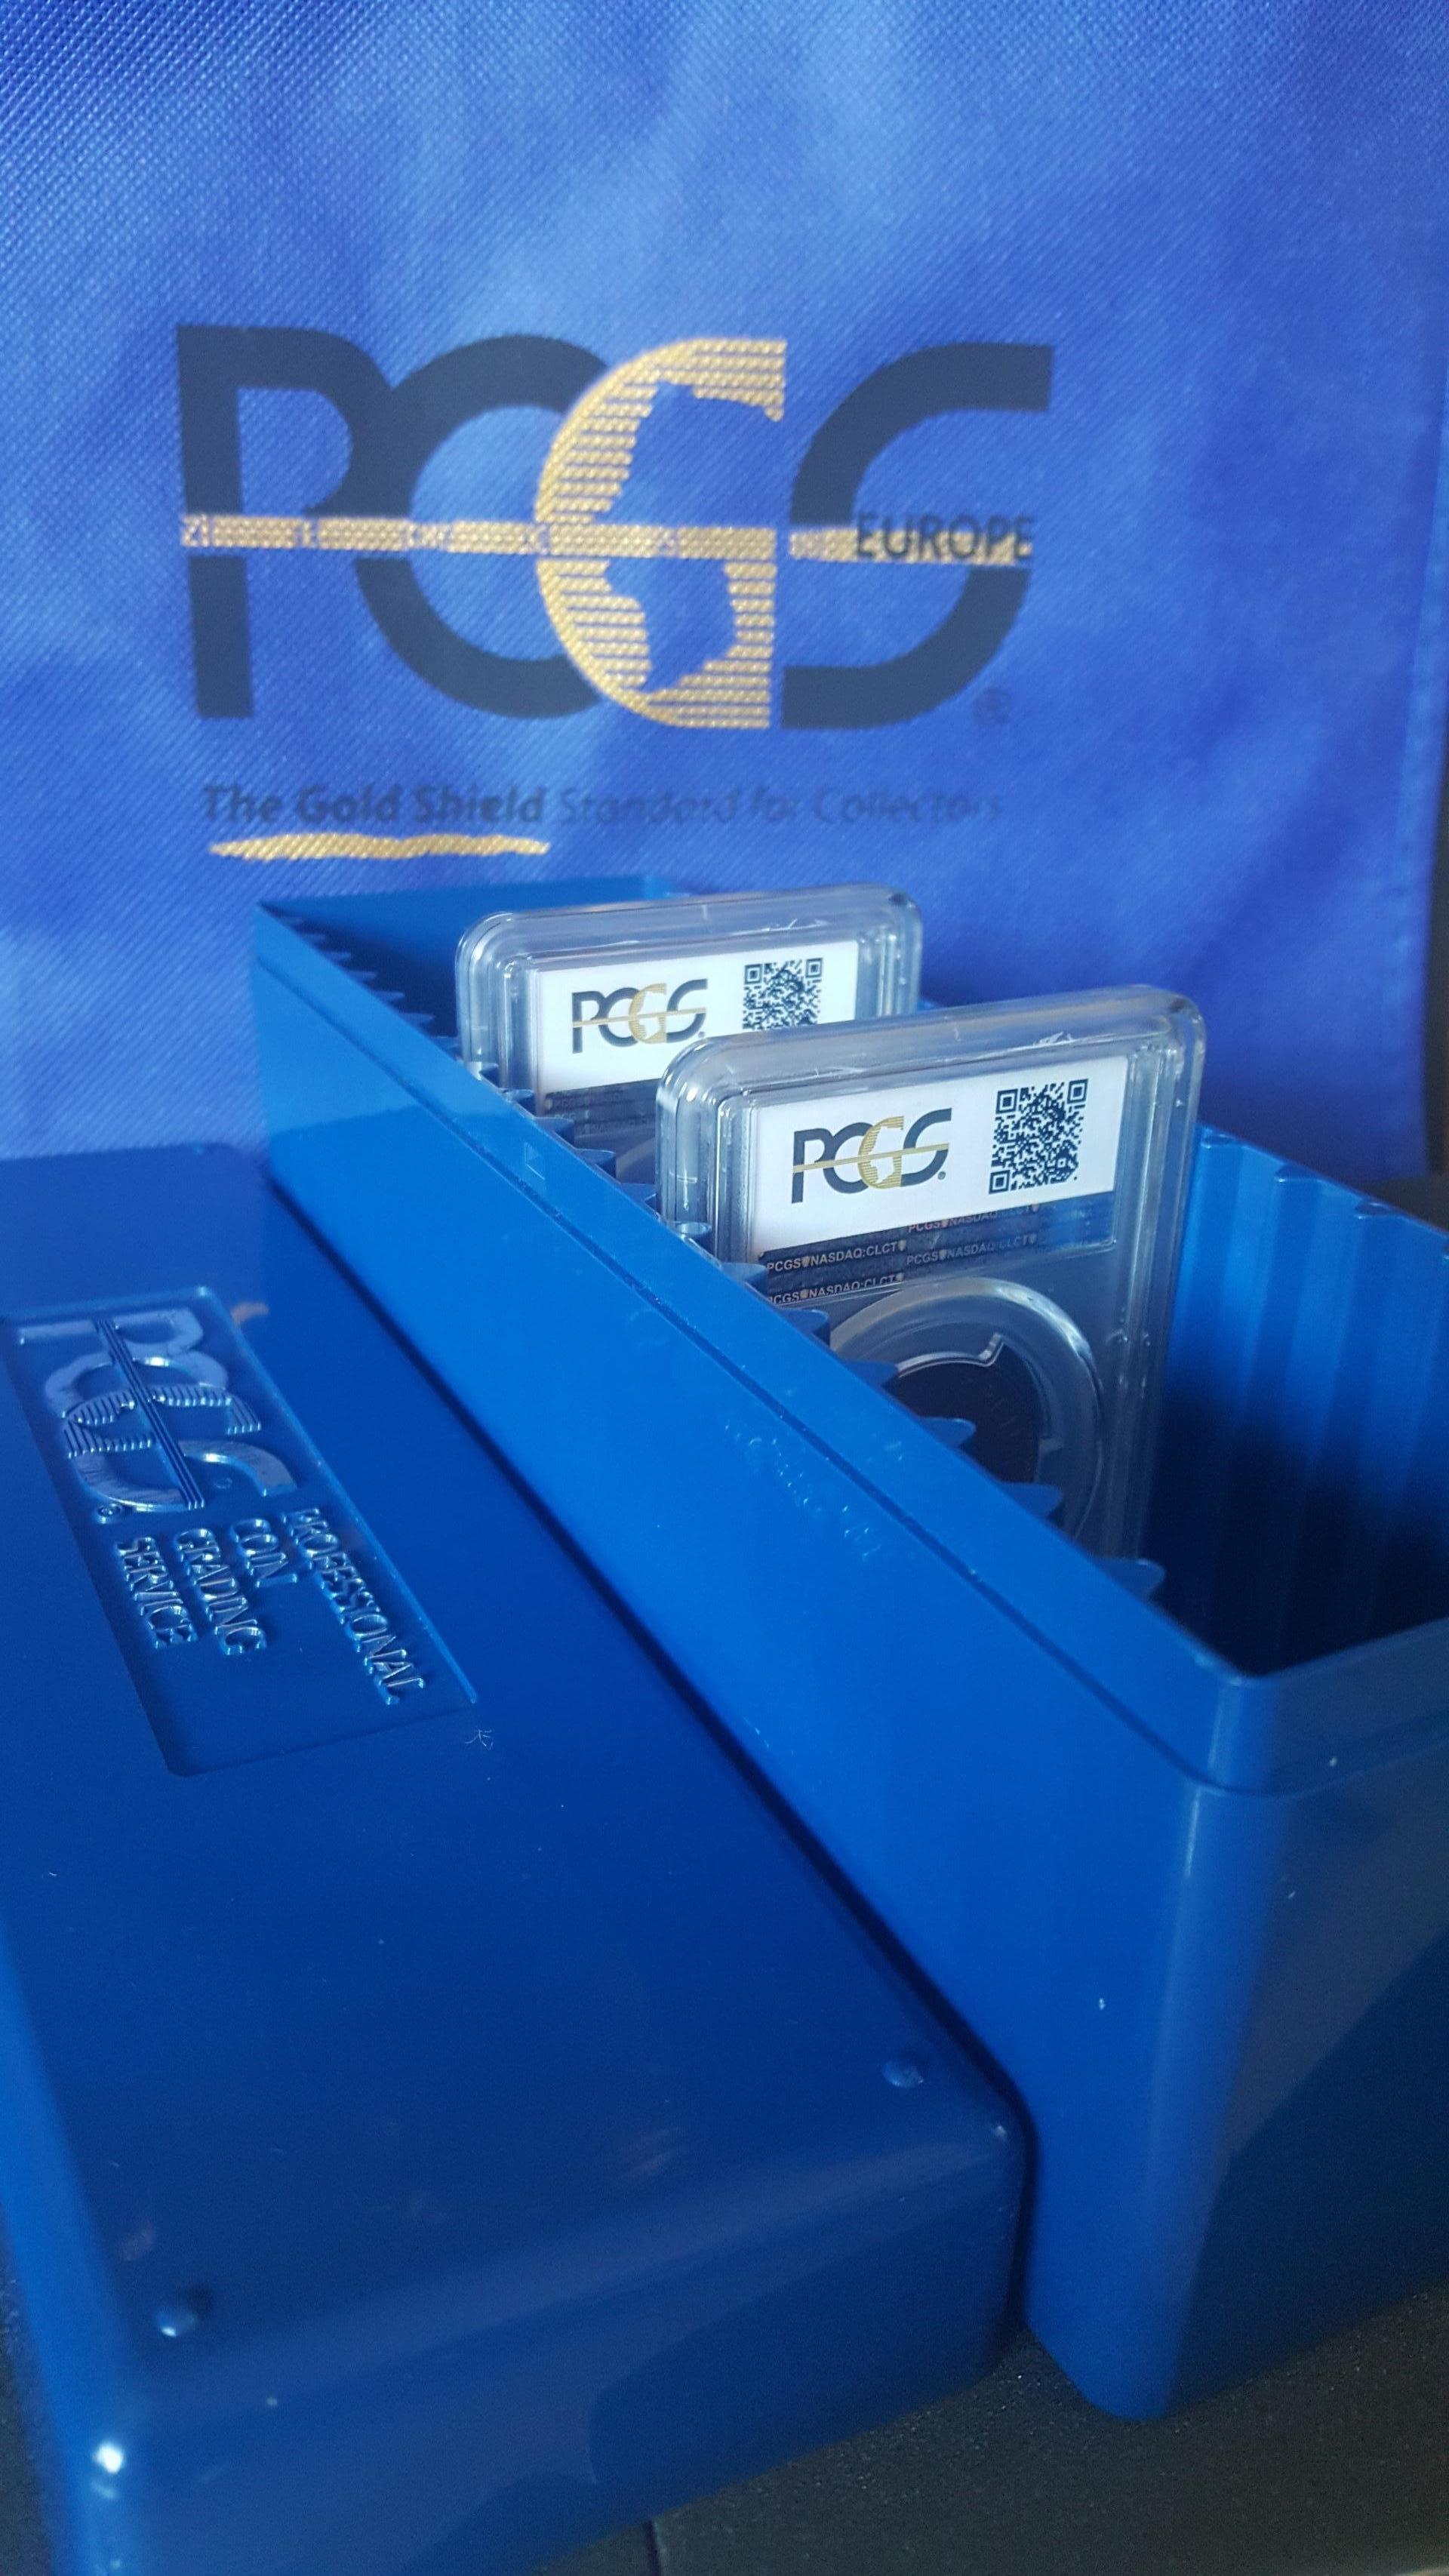 PCGS sertifikuotų monetų dėžutė